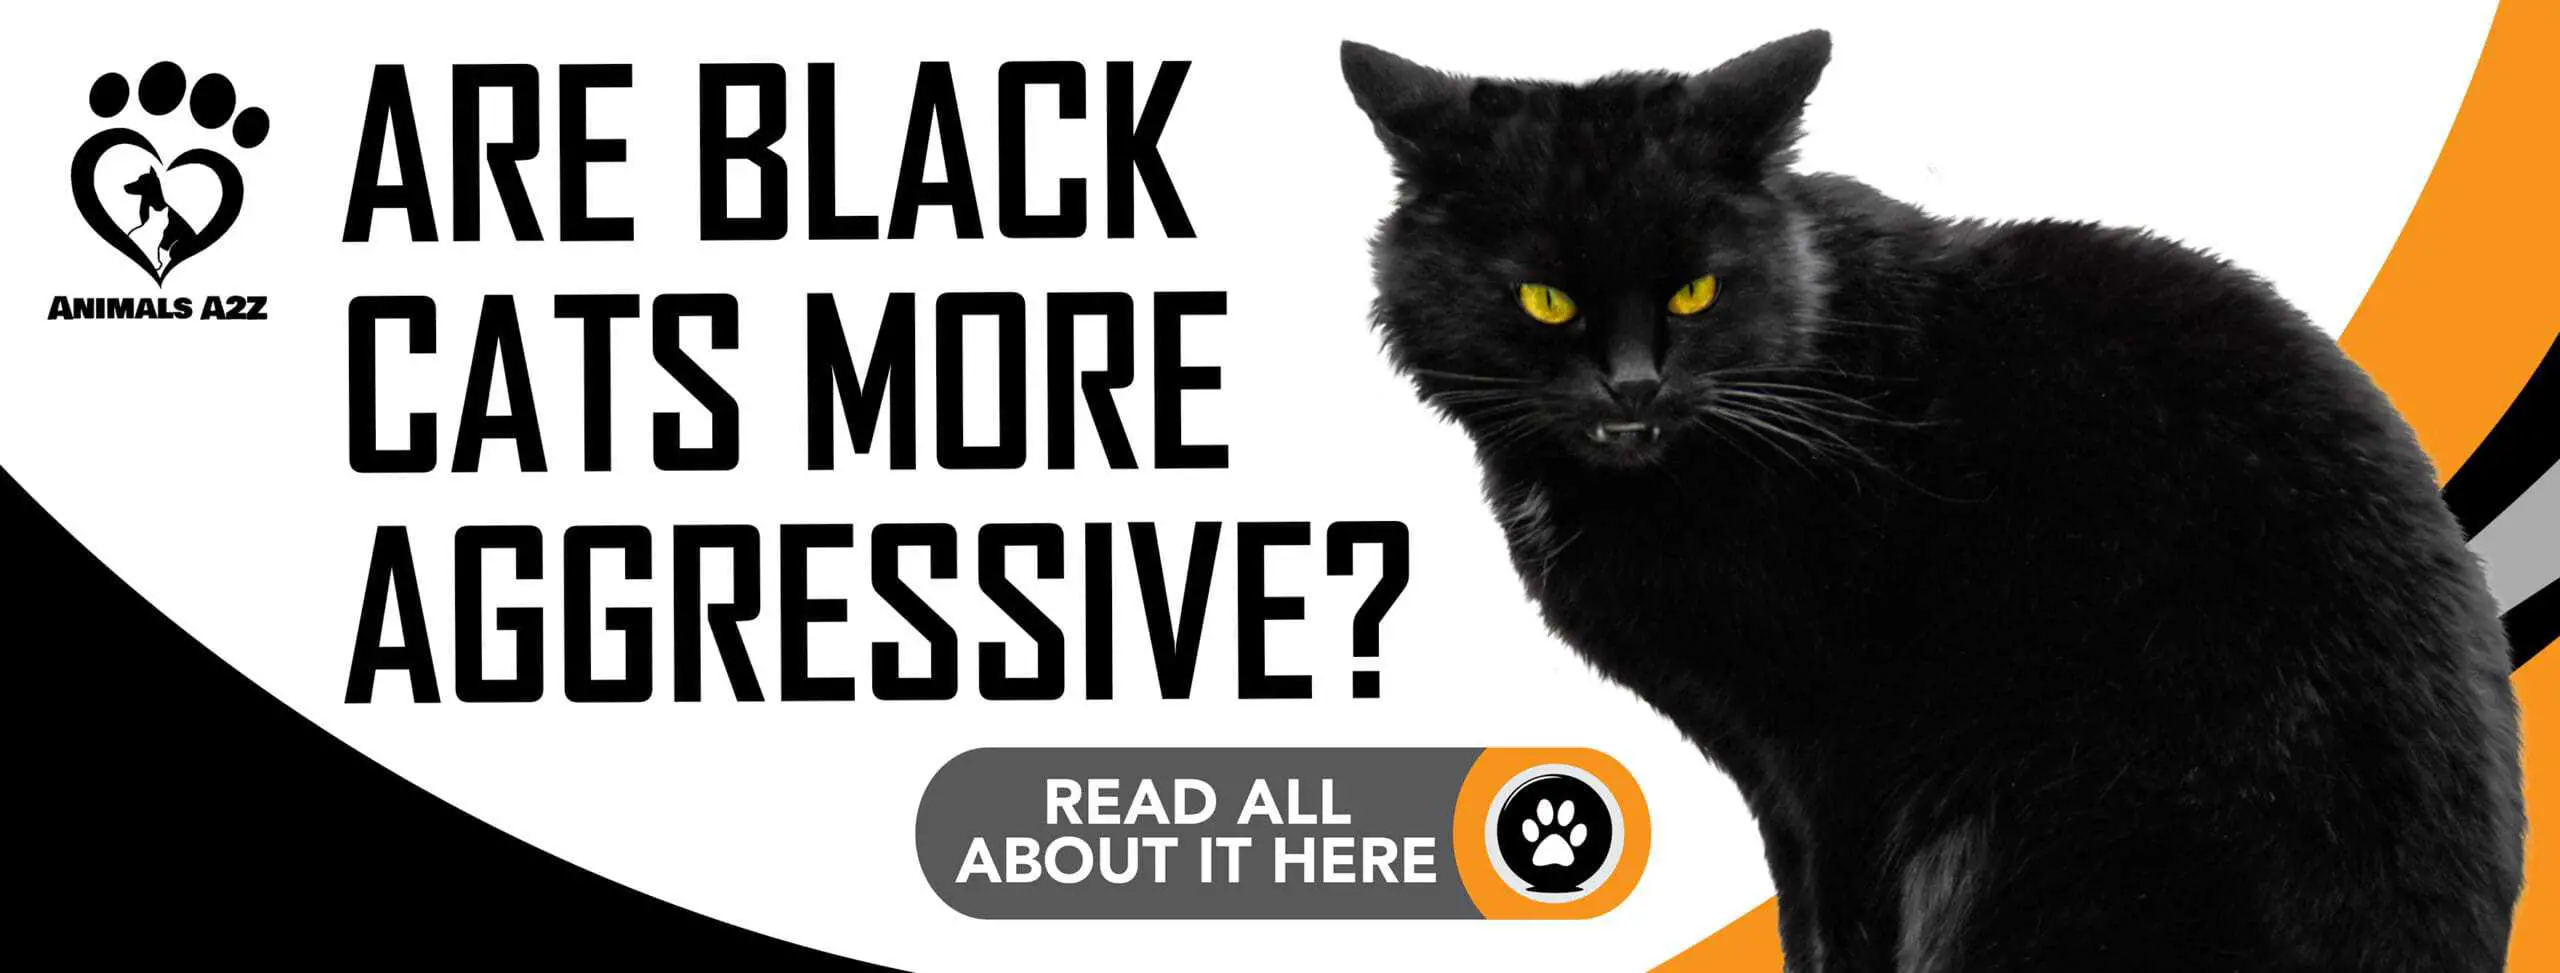 Are black cats more aggressive